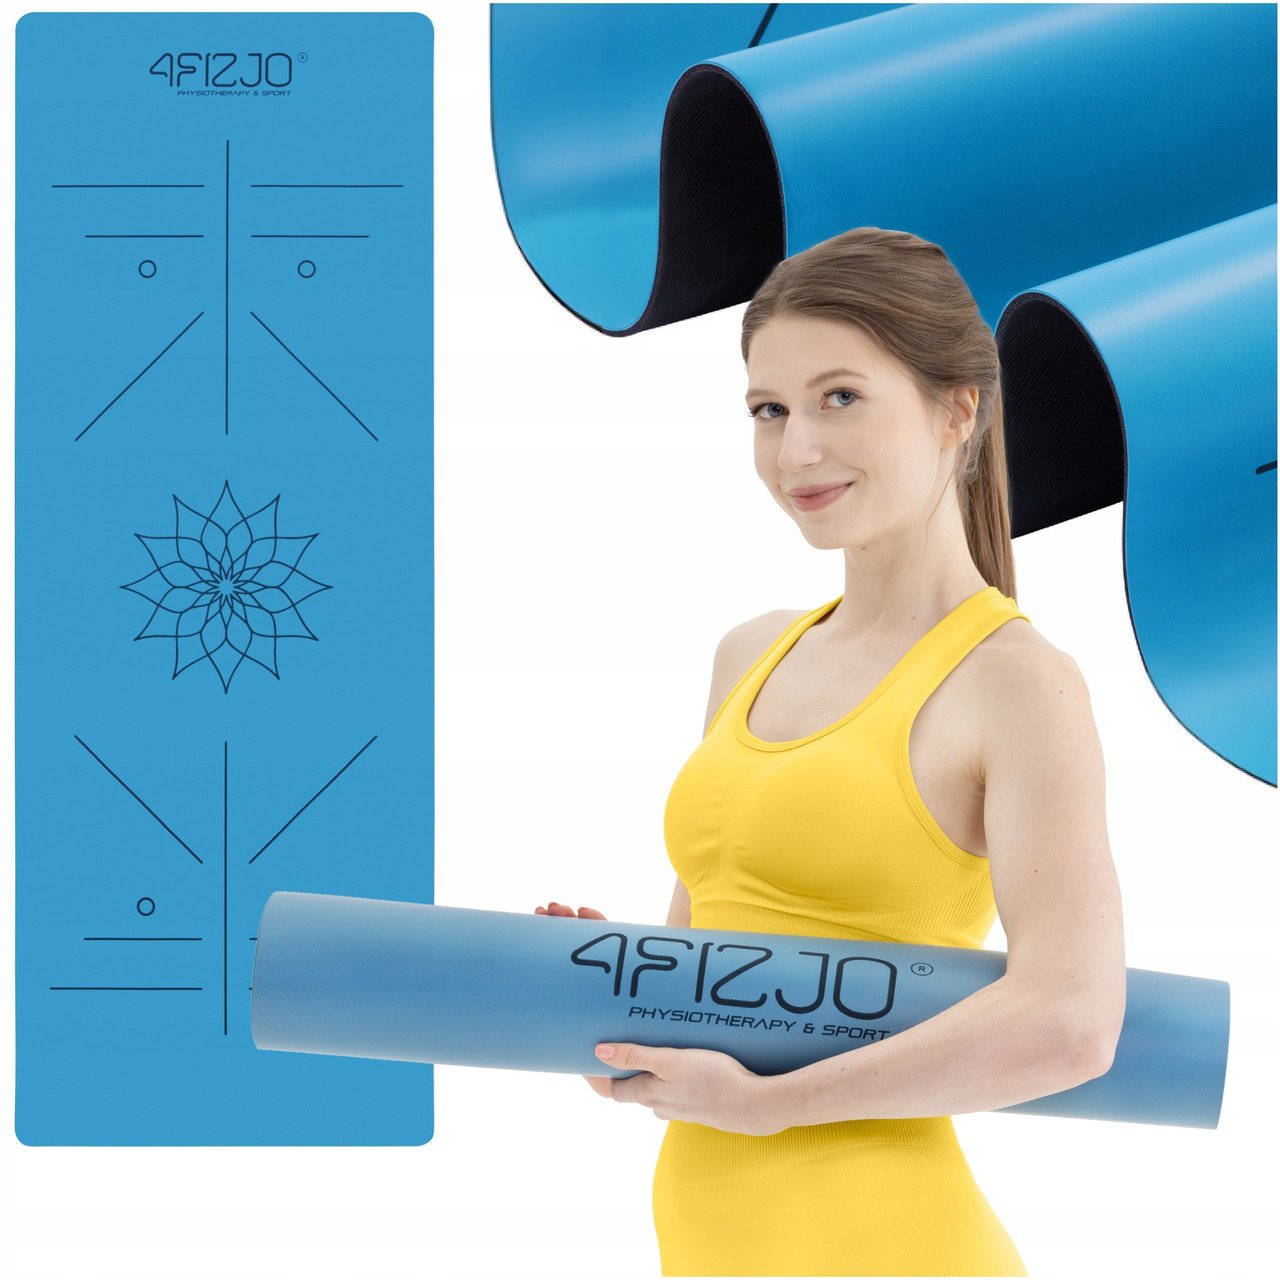 Килимок (мат) спортивний 4FIZJO PU 183 x 68 x 0.4 см для йоги та фітнесу 4FJ0588 Blue,  мл, 4FIZJO. Фитнес товары. 